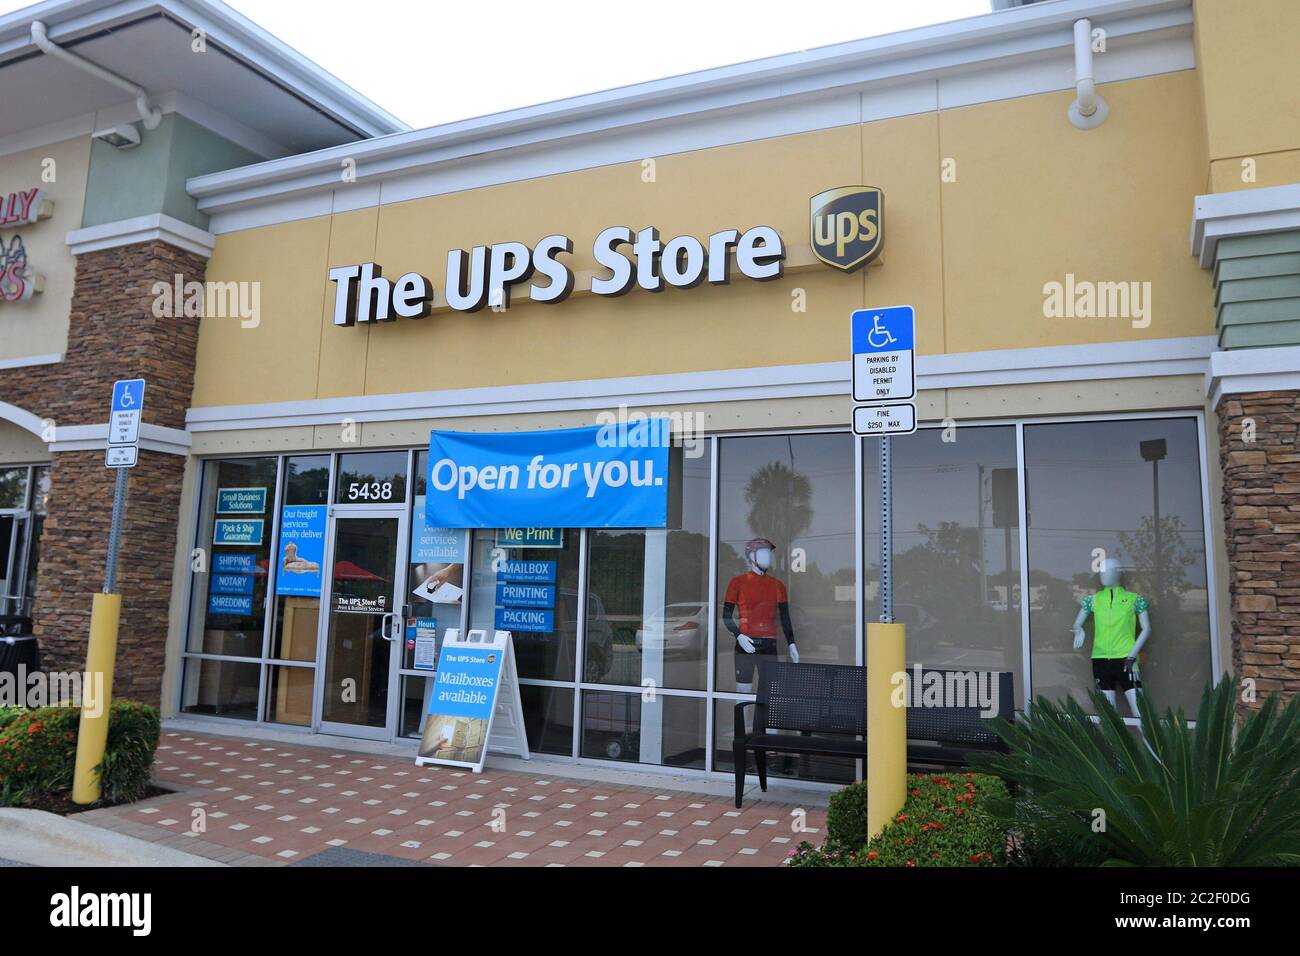 Bradenton, FL, 4/17/2020: Vue de l'avant d'un magasin UPS pendant la pandémie du coronavirus. Banque D'Images